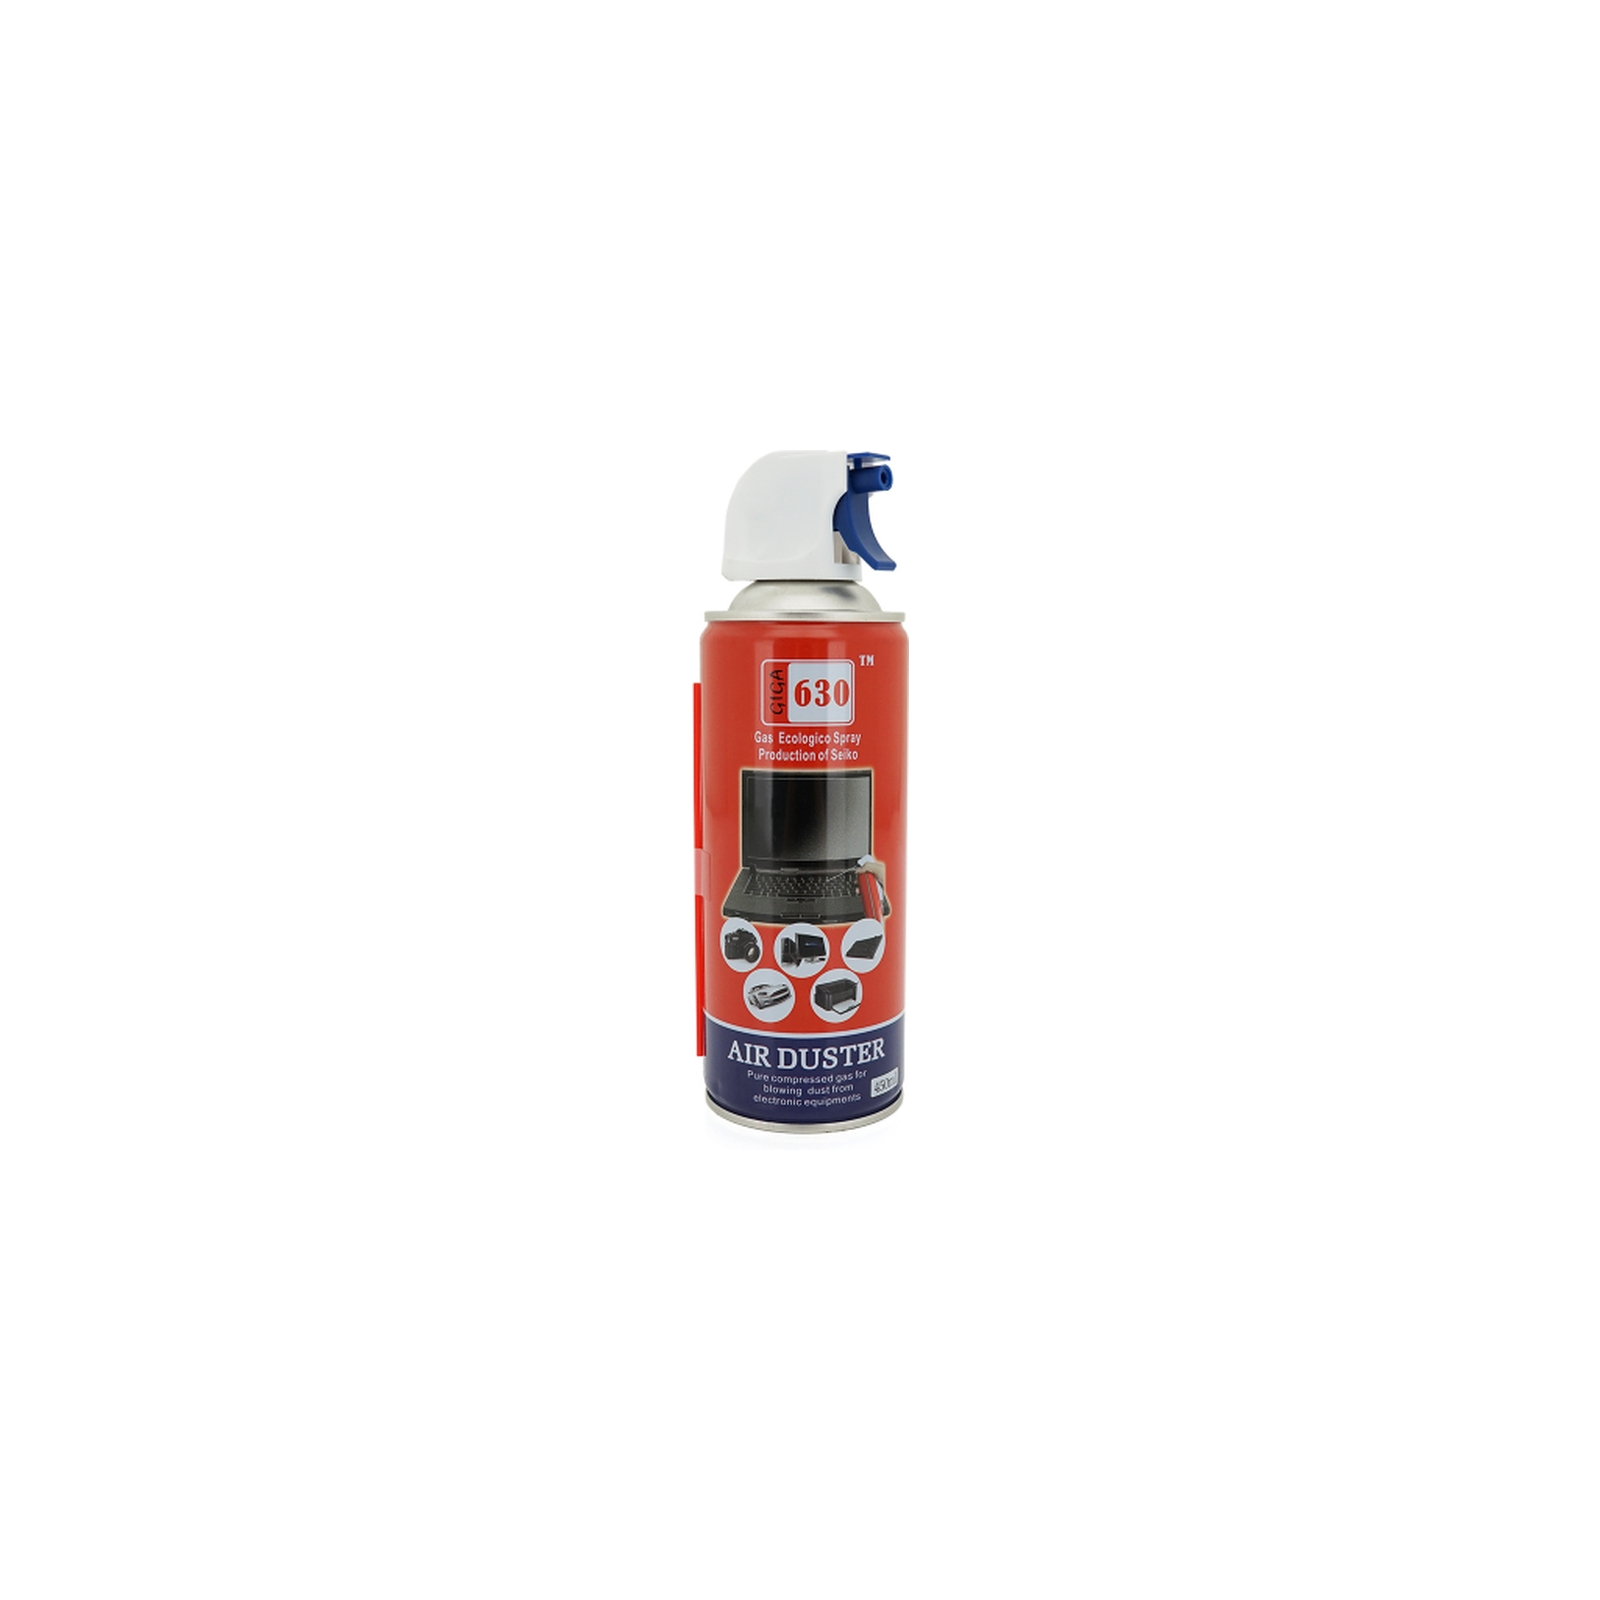 Чистящий сжатый воздух spray duster 630 HANDBOSS (AD630)